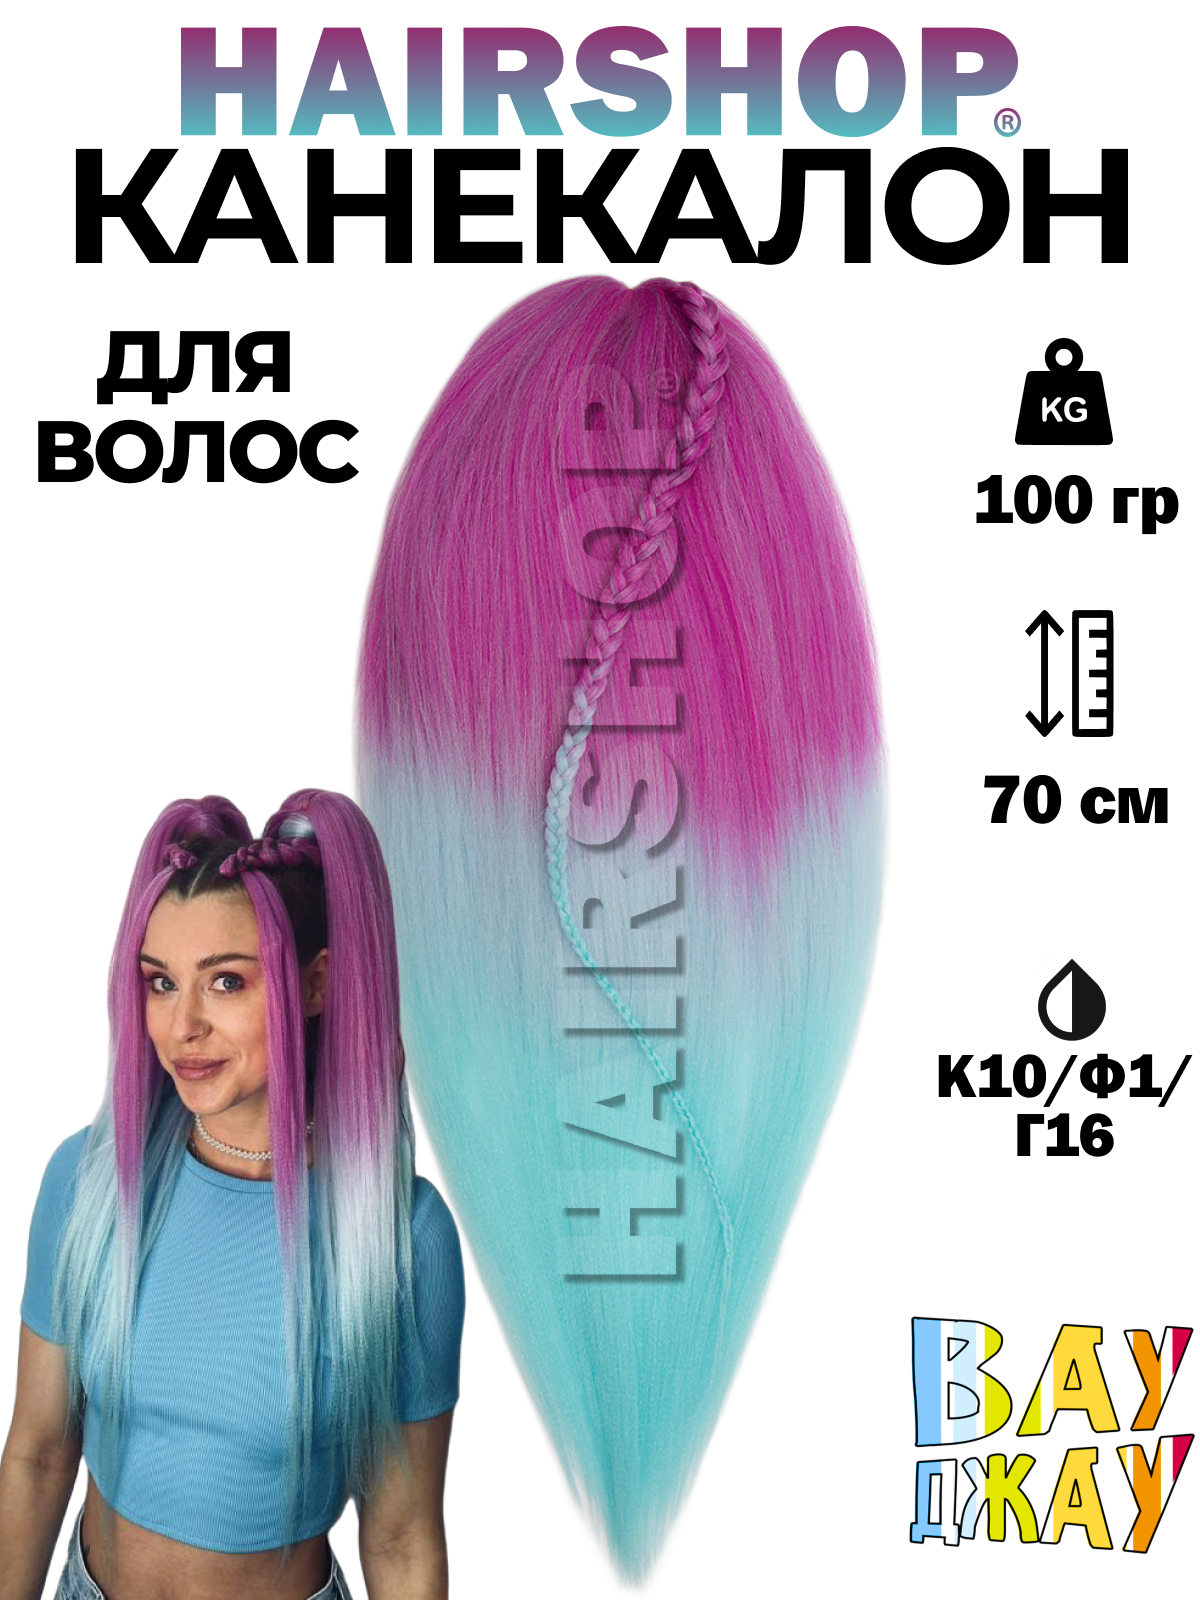 Канекалон HAIRSHOP Вау Джау К10-Ф1-Г16 1,3м 100г Розовый, Нежно-фиолетовый и голубой венчик для смешивания краски 02 фиолетовый